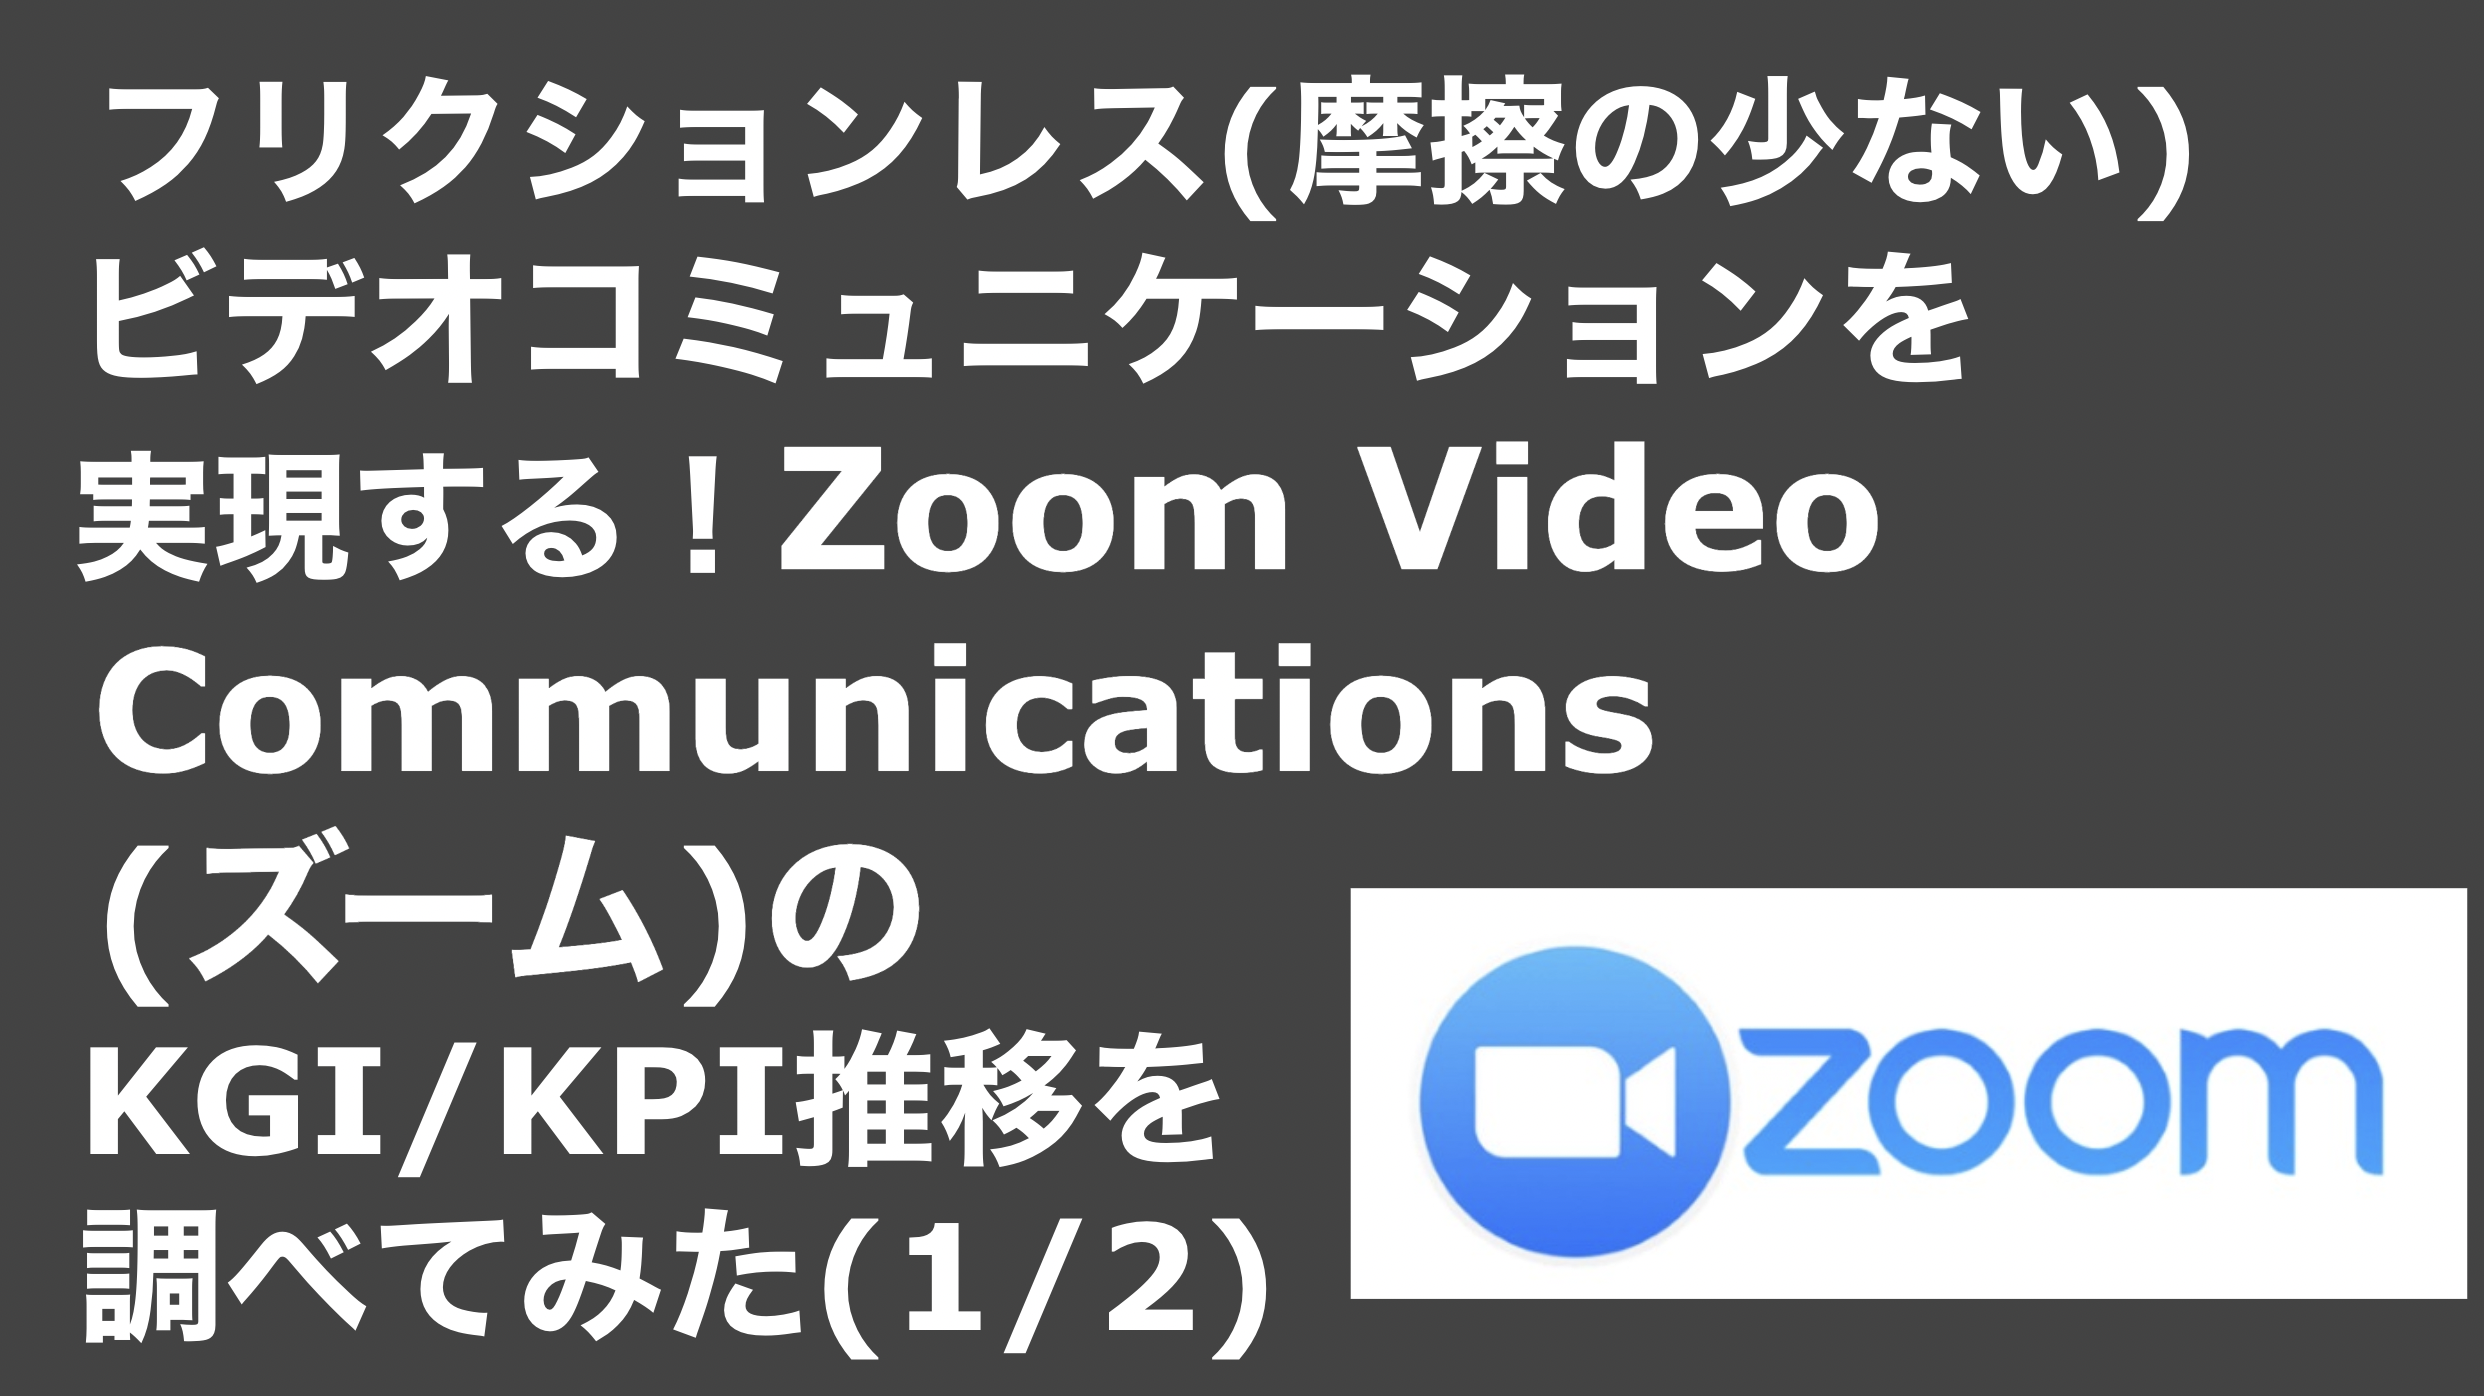 saaslife_ フリクションレス(摩擦の少ない)ビデオコミュニケーションを実現する！Zoom Video Communications(ズーム)のKGI/KPI推移を調べてみた(2/2)